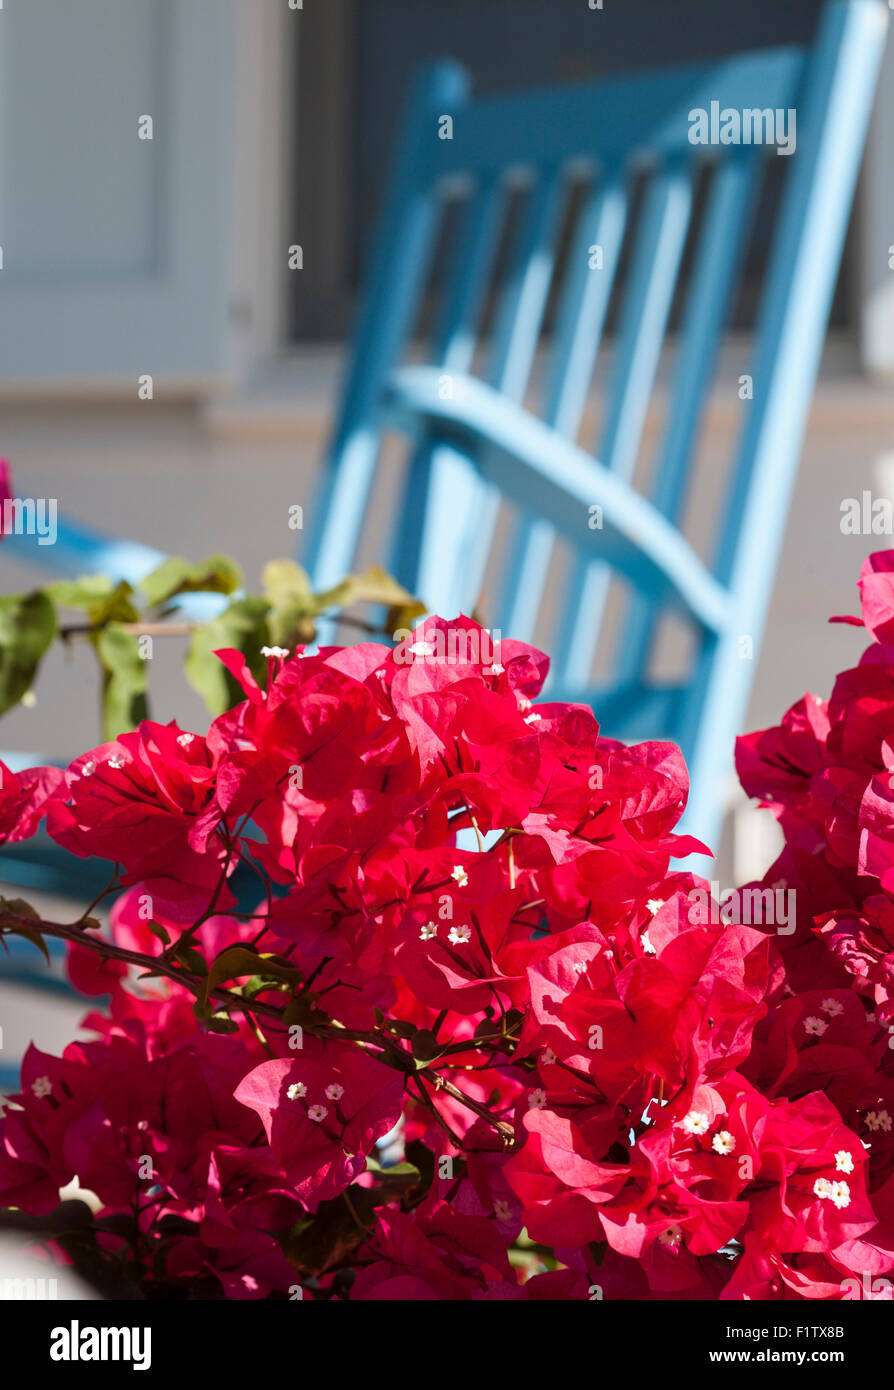 Hibiscus rouge et bleu fauteuil à bascule. Une branche d'un buisson d'Hibiscus masque partiellement un rocking chair bleu porté doucement Banque D'Images